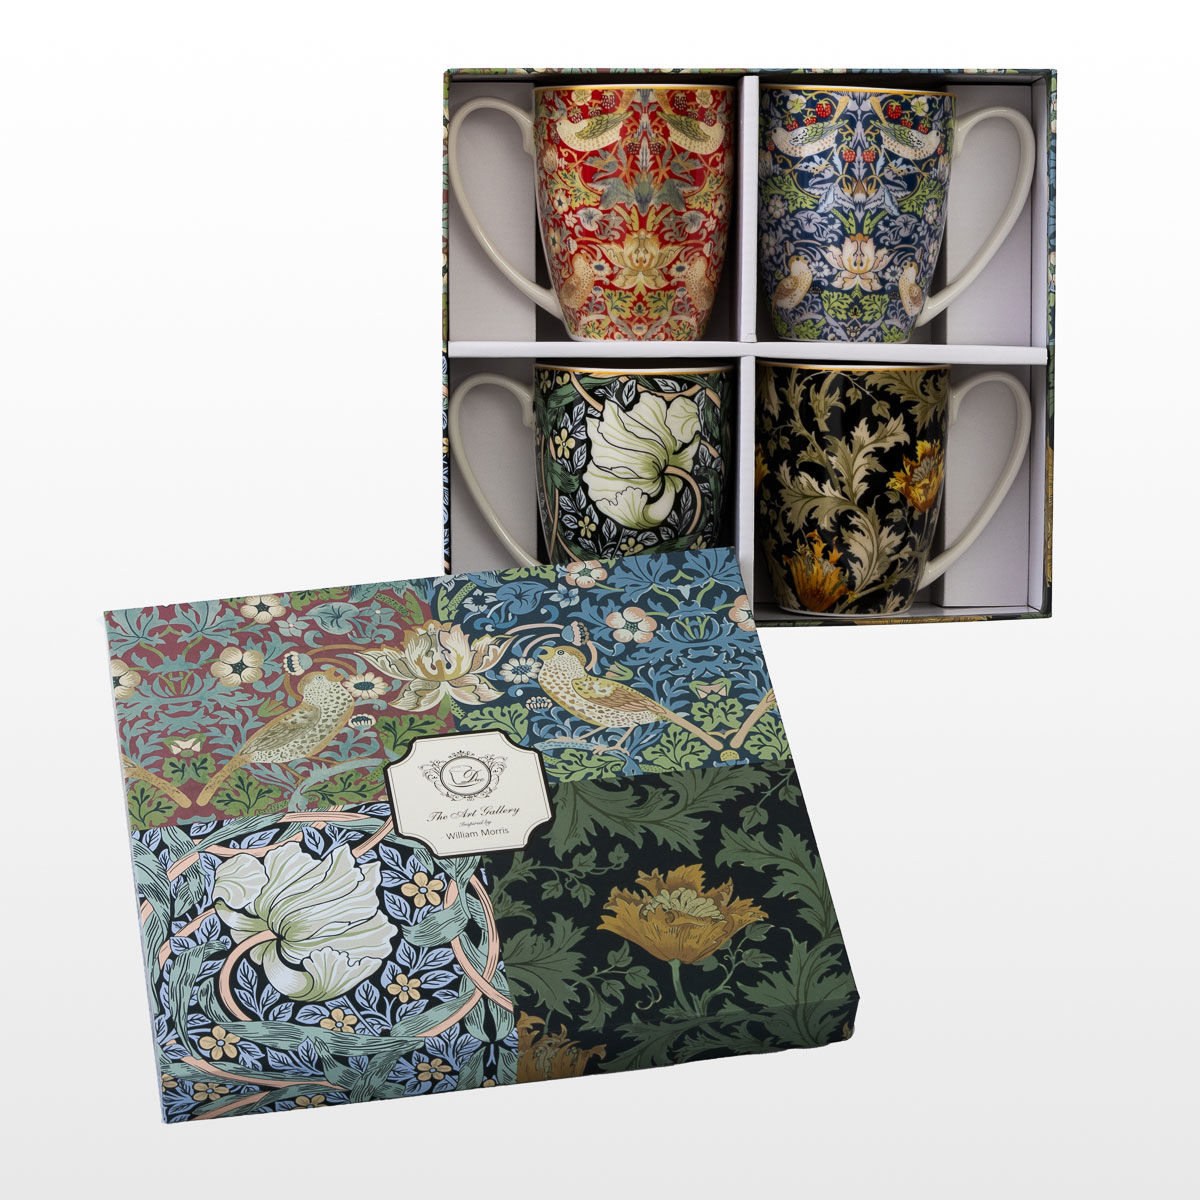 4 tazze William Morris (in una scatola regalo), dettaglio n°2